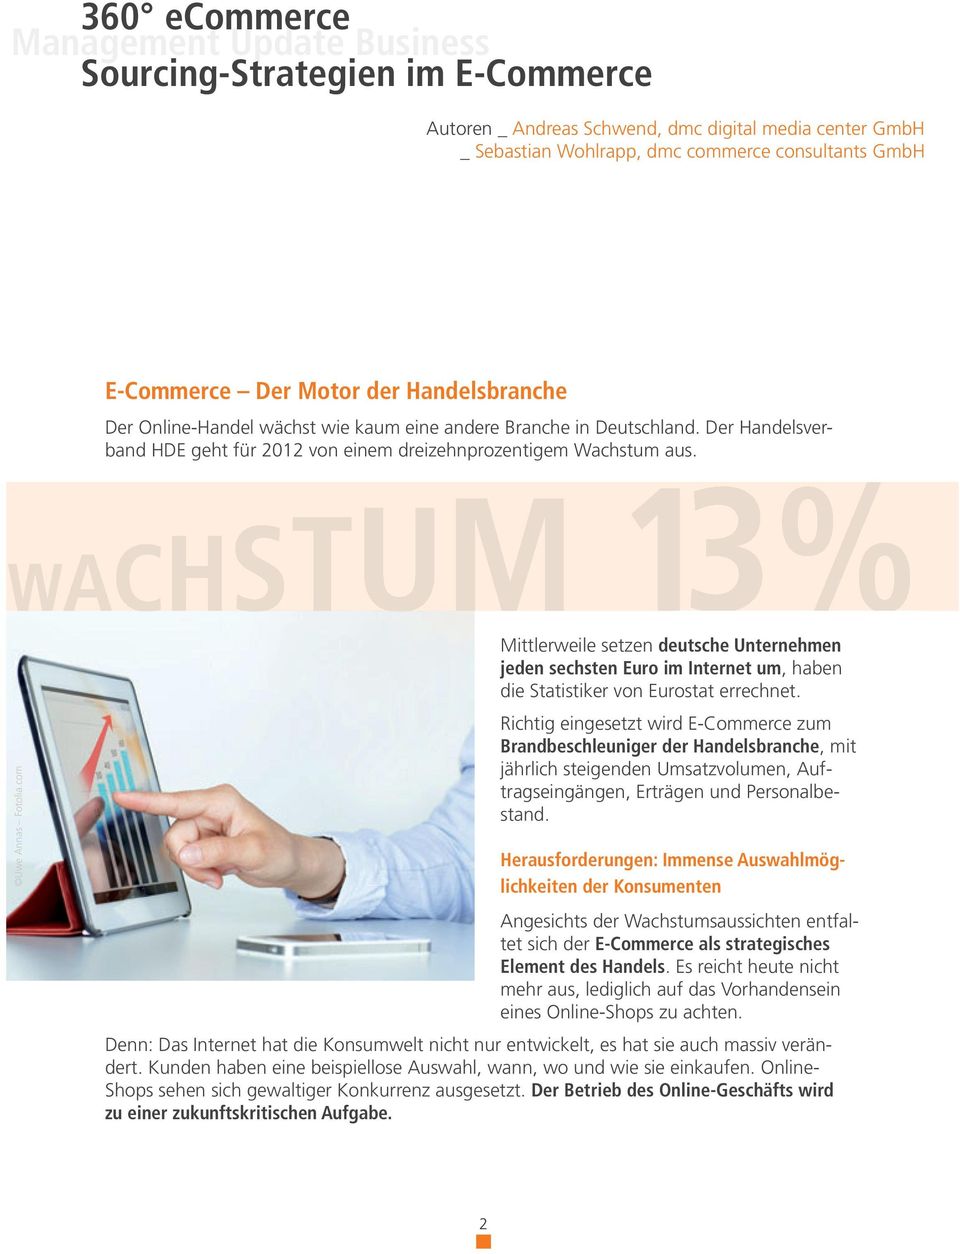 WACHSTUM 13% Uwe Annas Fotolia.com Mittlerweile setzen deutsche Unternehmen jeden sechsten Euro im Internet um, haben die Statistiker von Eurostat errechnet.